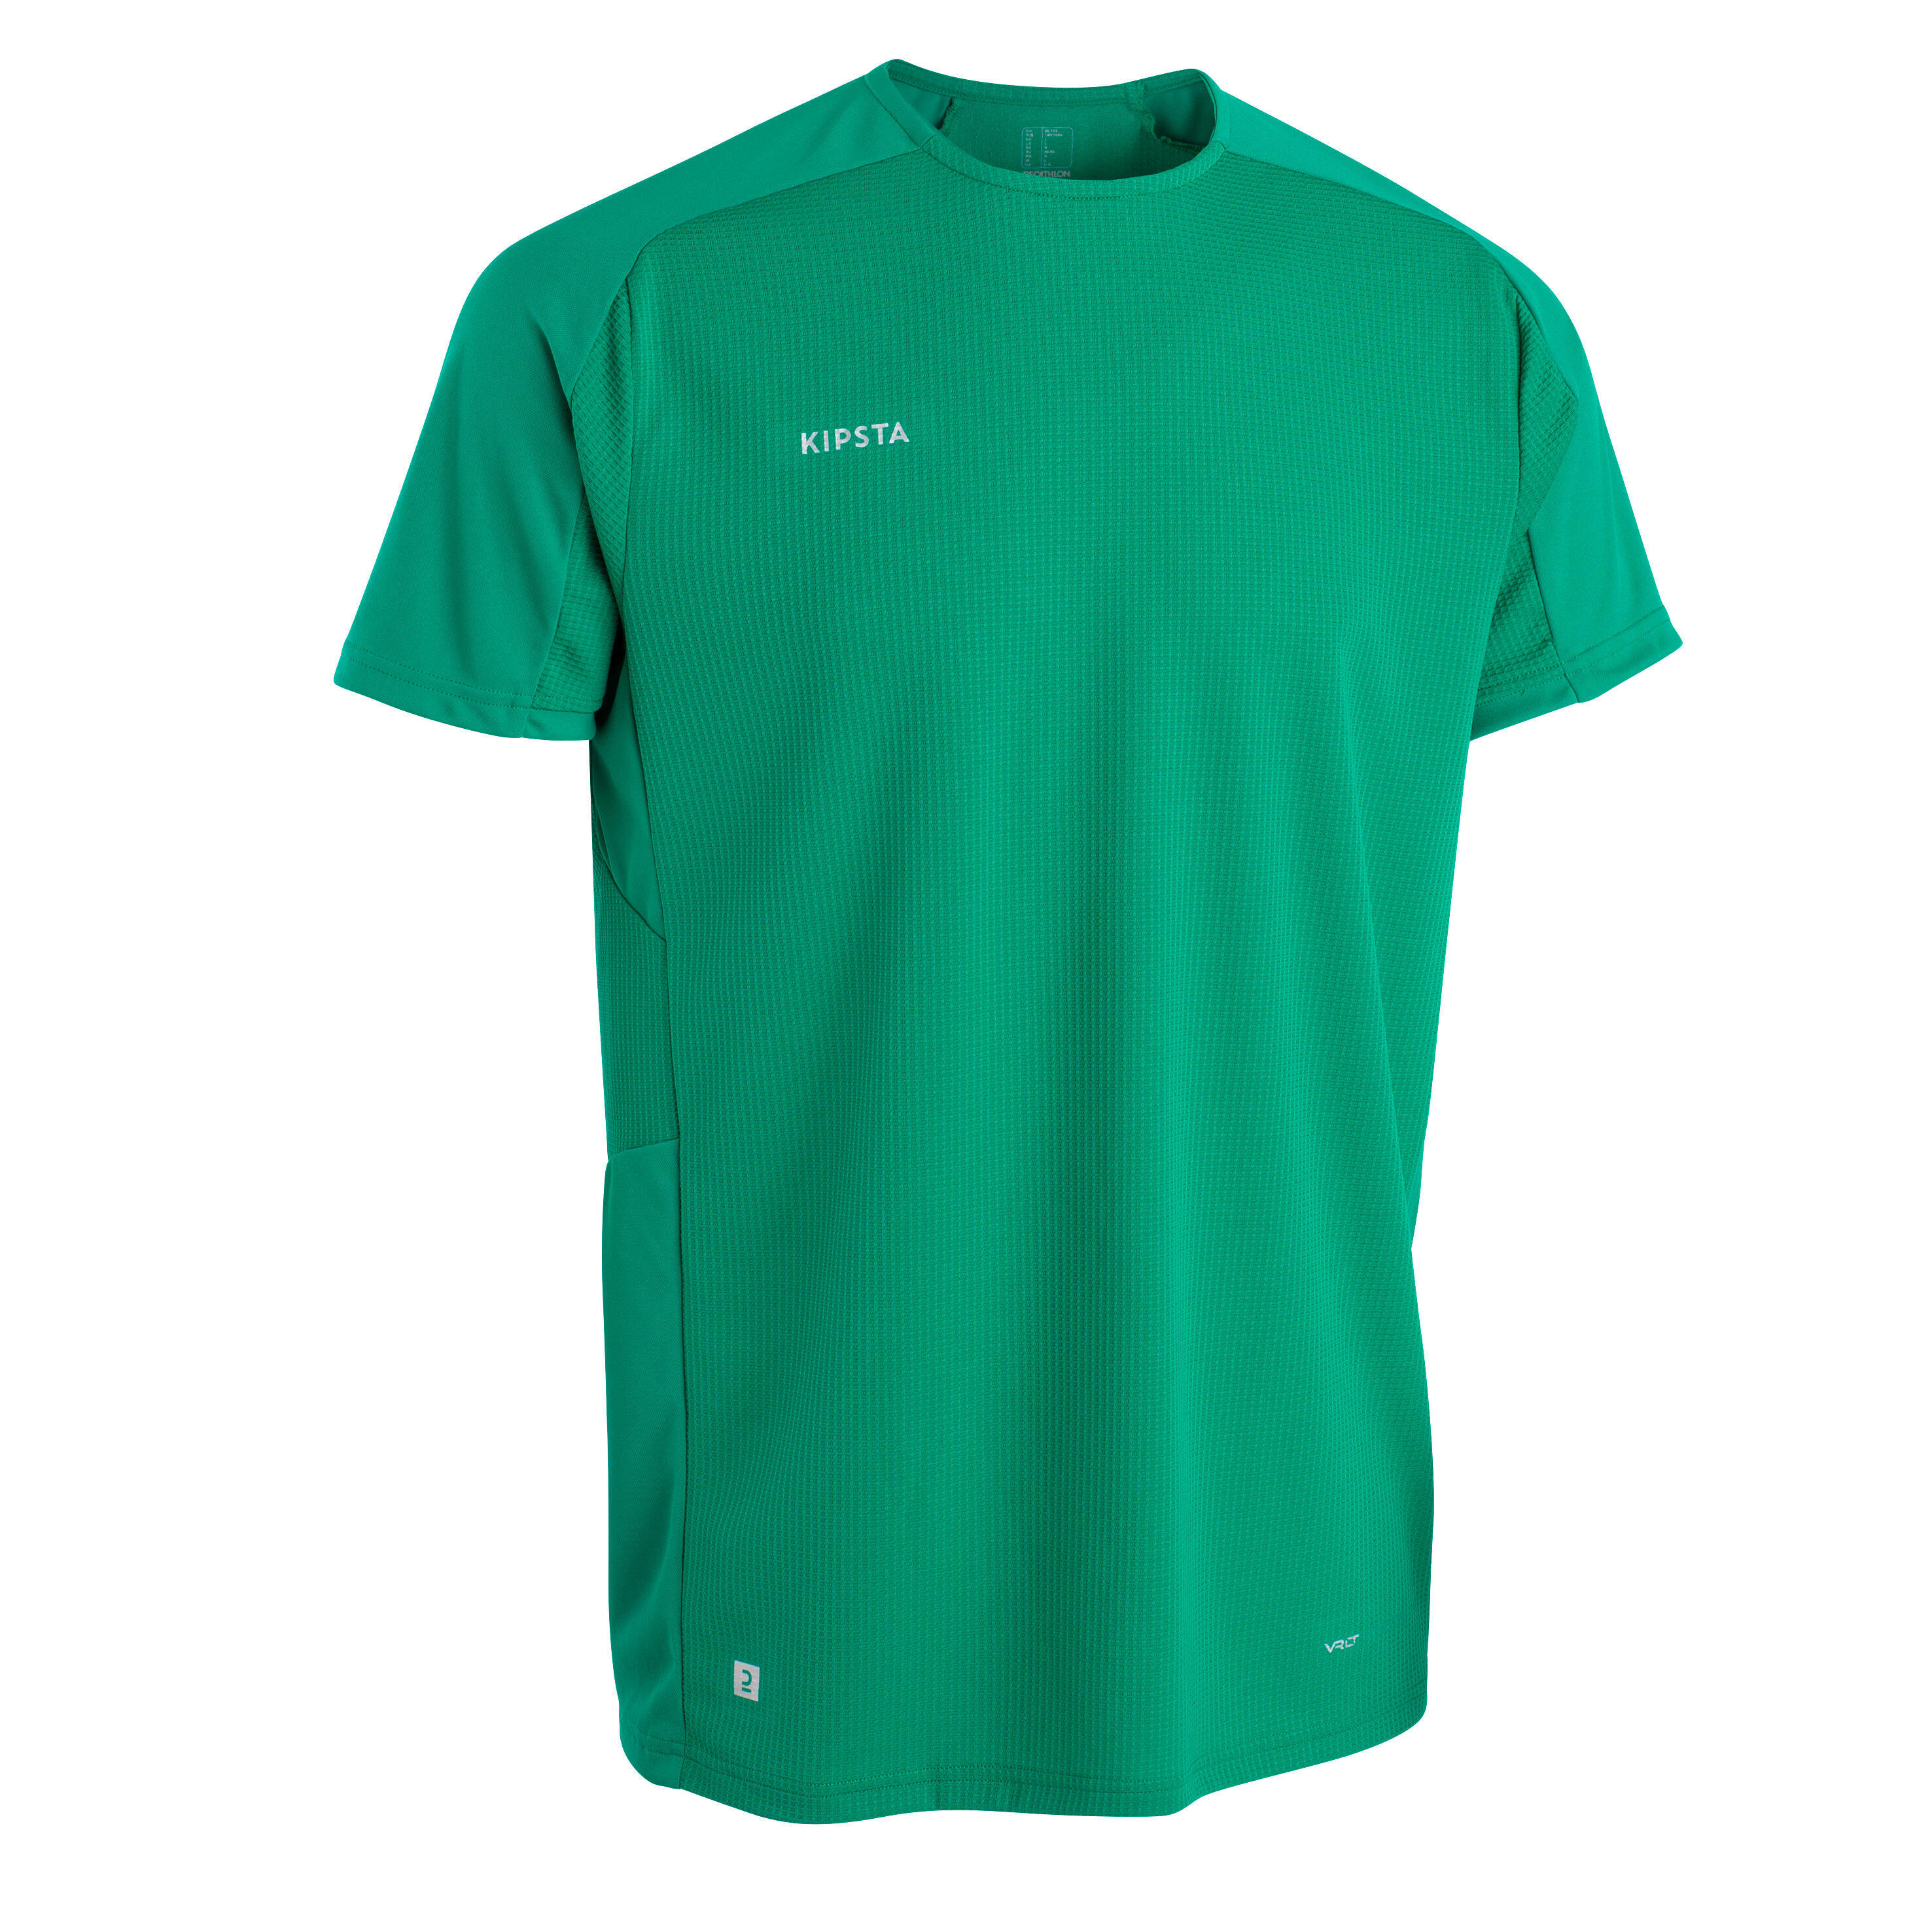 KIPSTA Short-Sleeved Football Shirt Viralto Club - Green